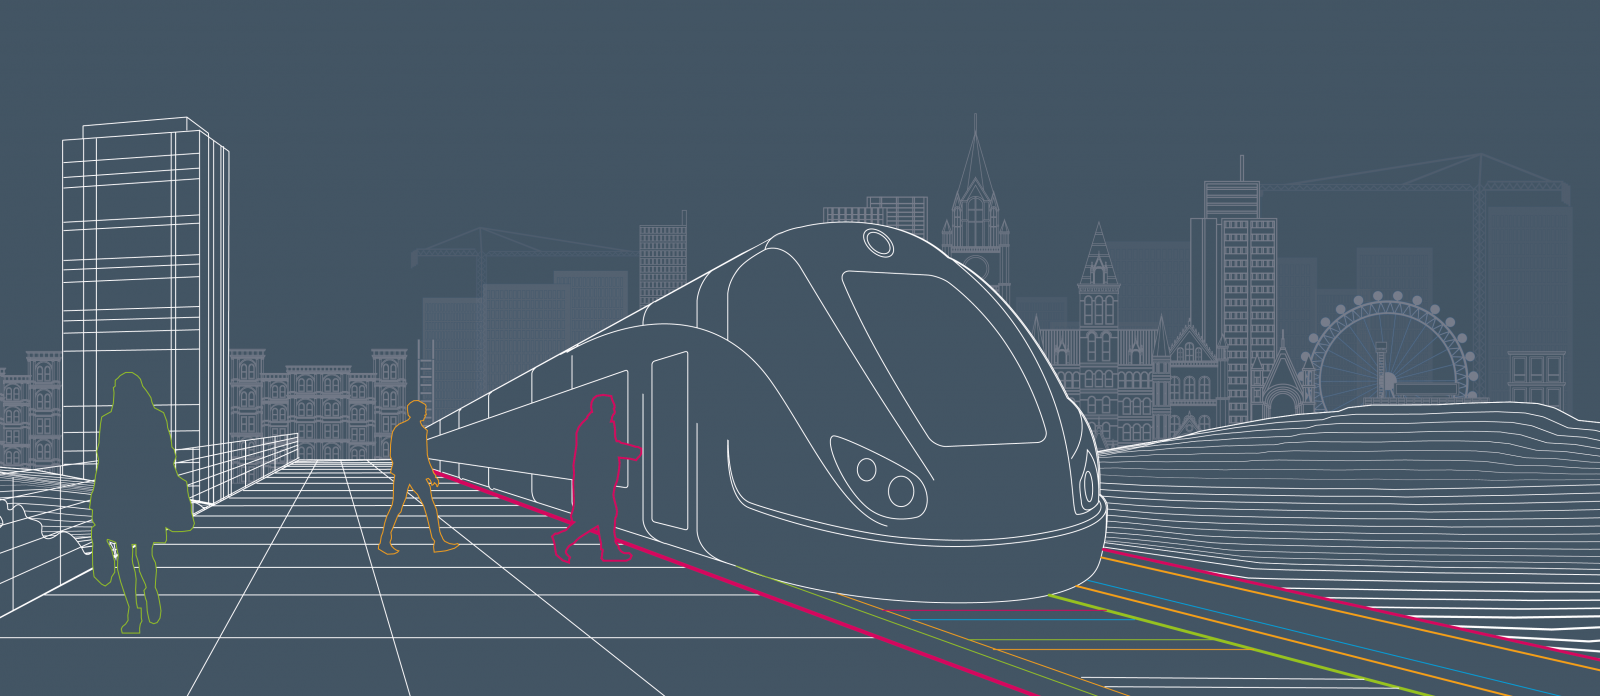 Rail Cities UK report